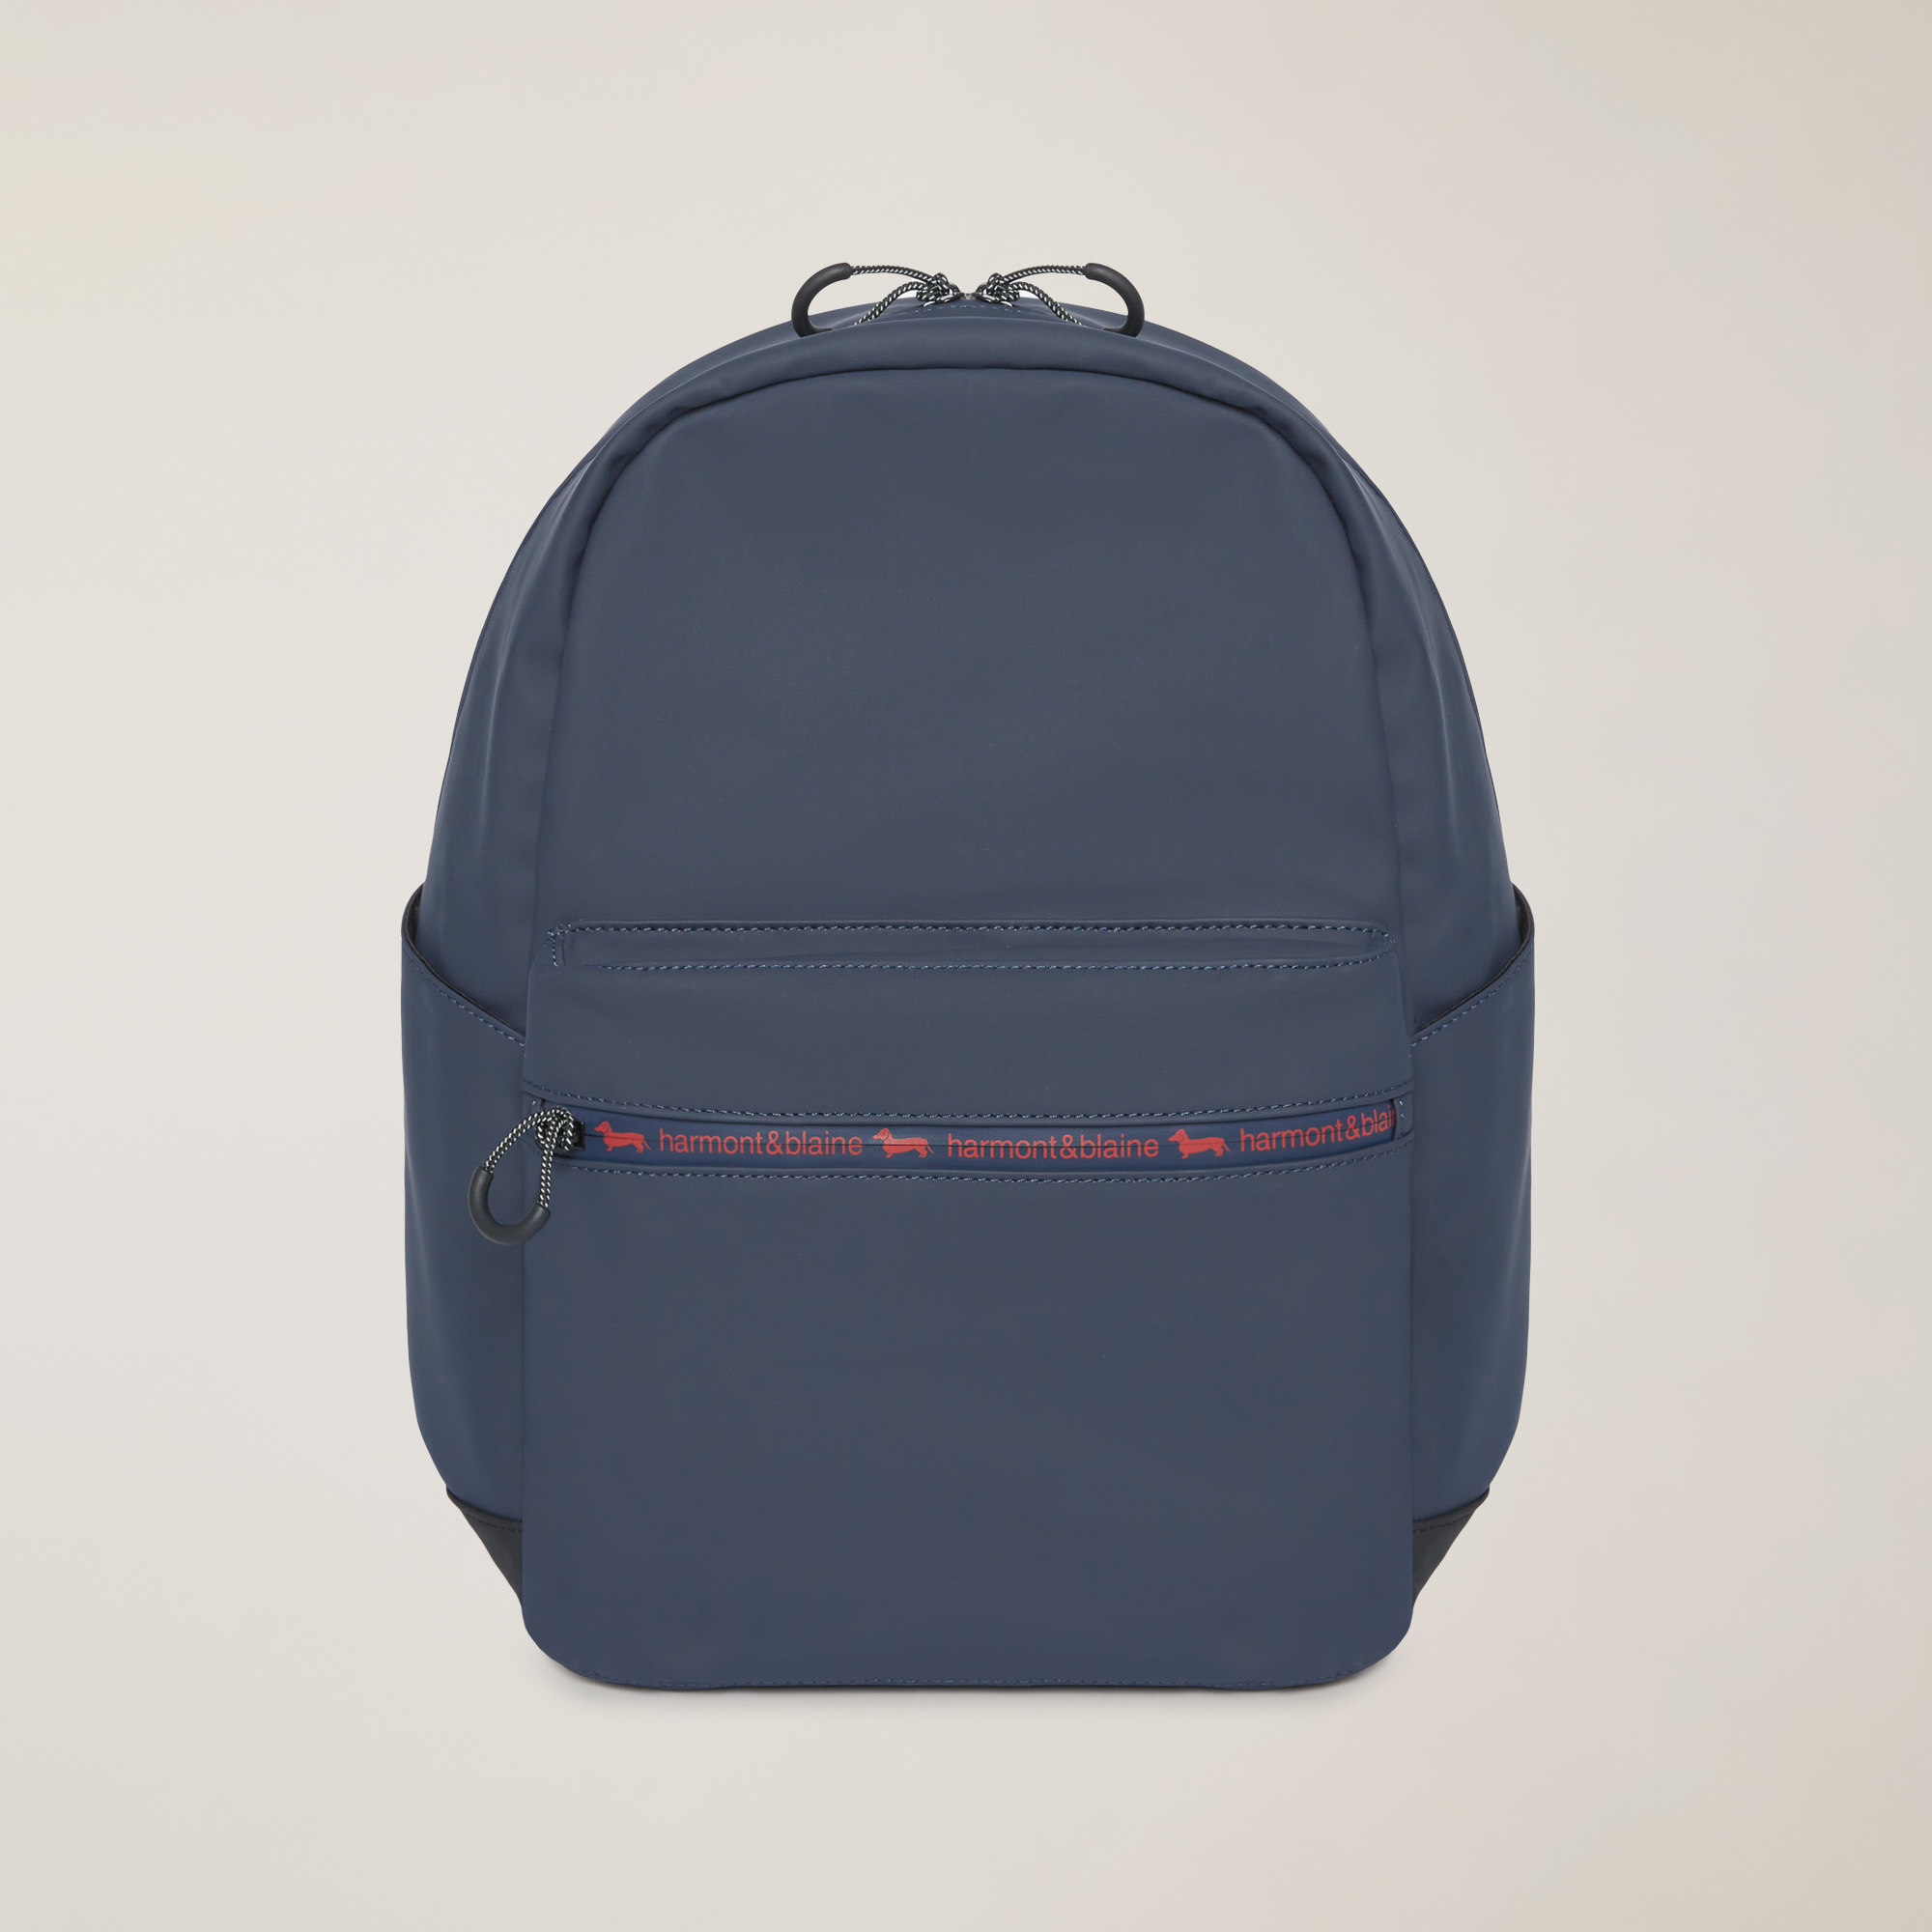 Backpack With Branded Details, Blue, large image number 0